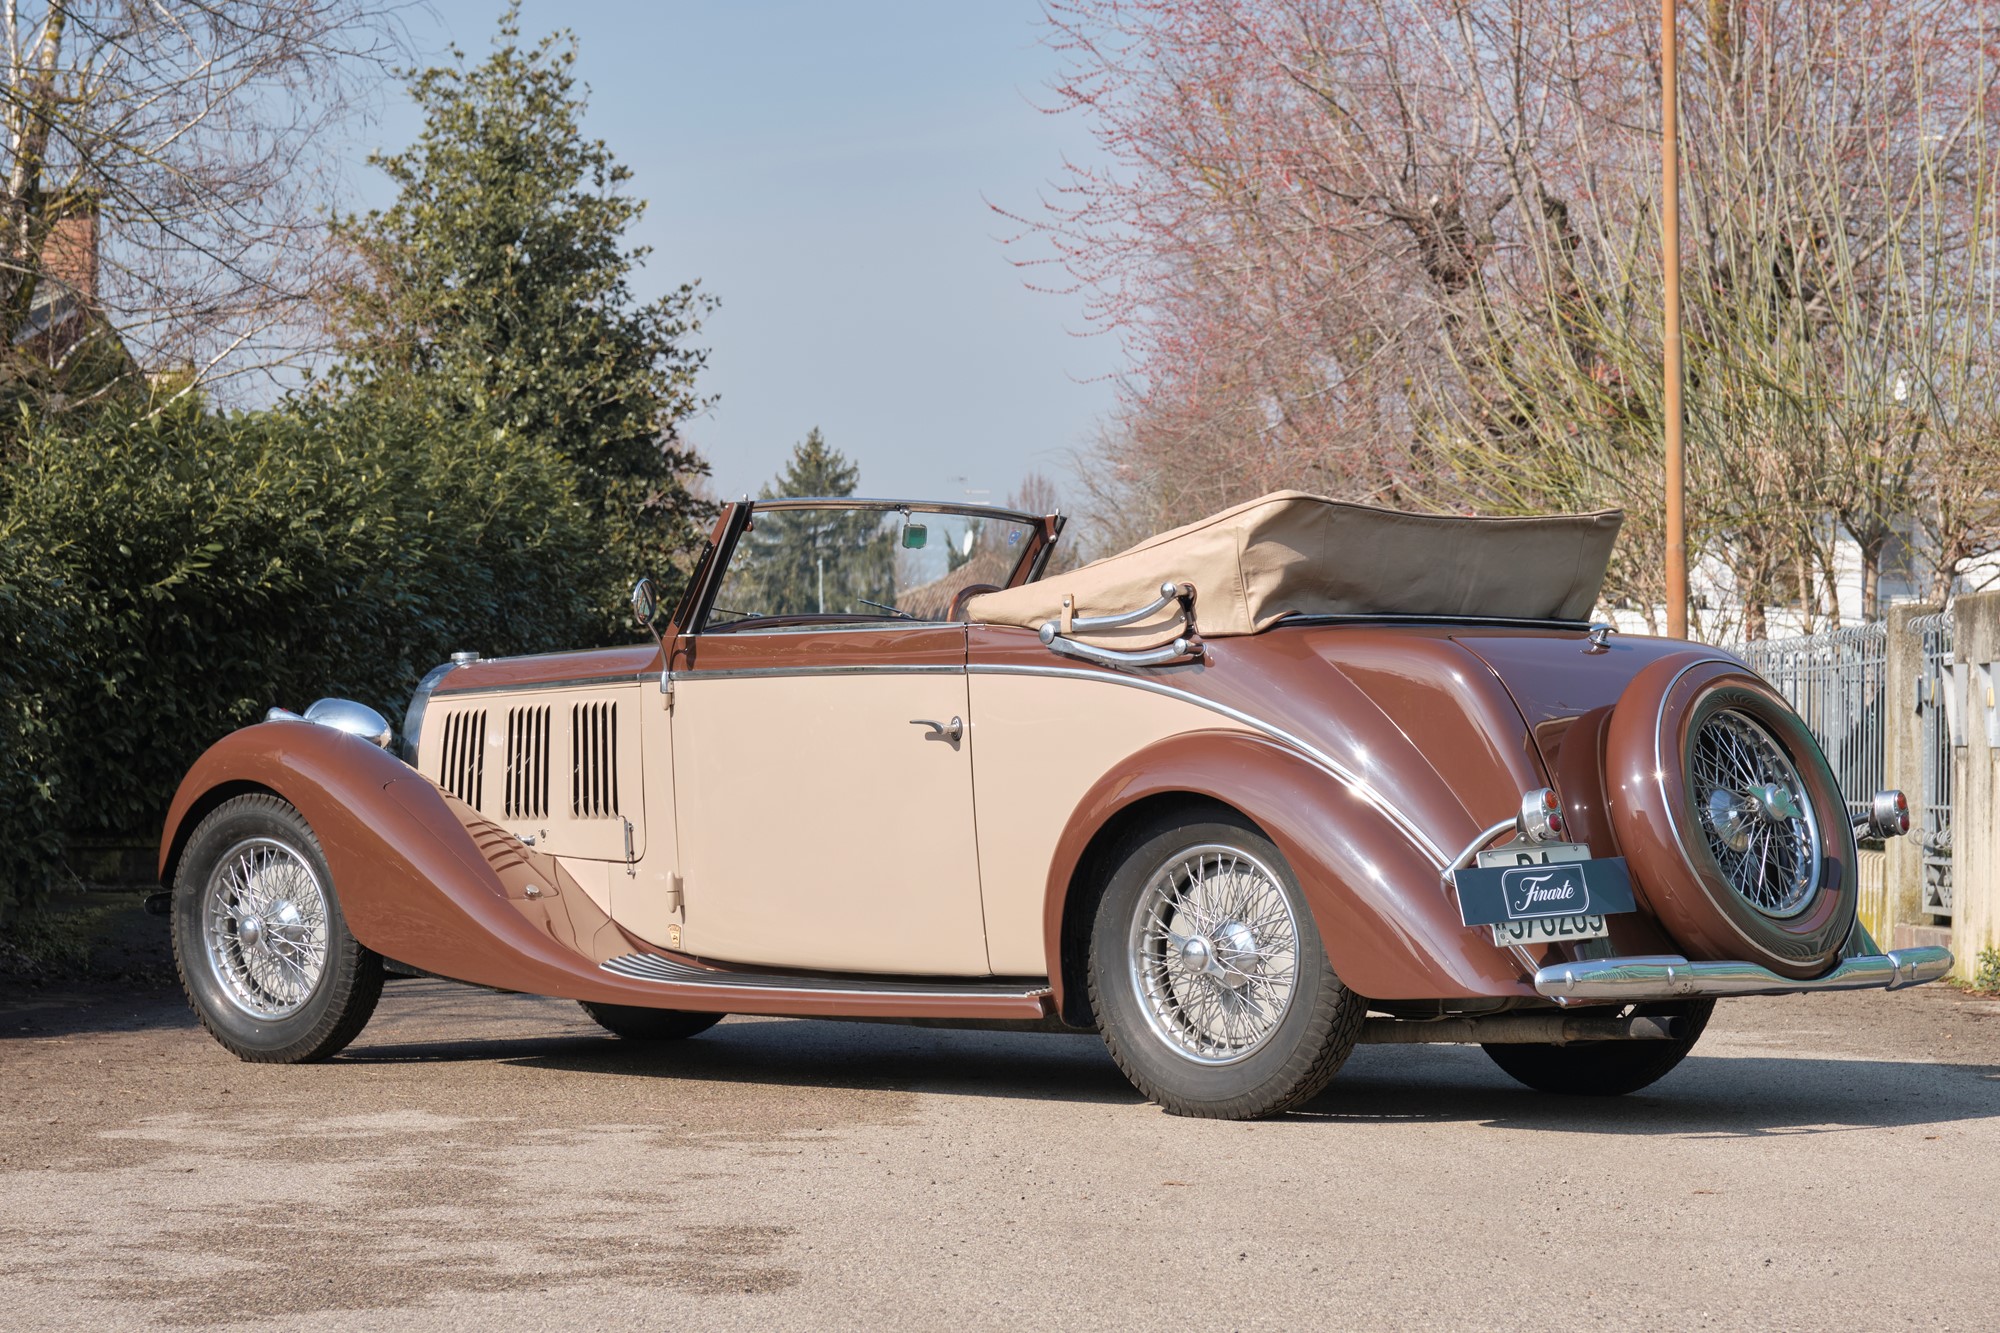 1936 Bugatti 57 cabriolet (Graber) - Image 3 of 13